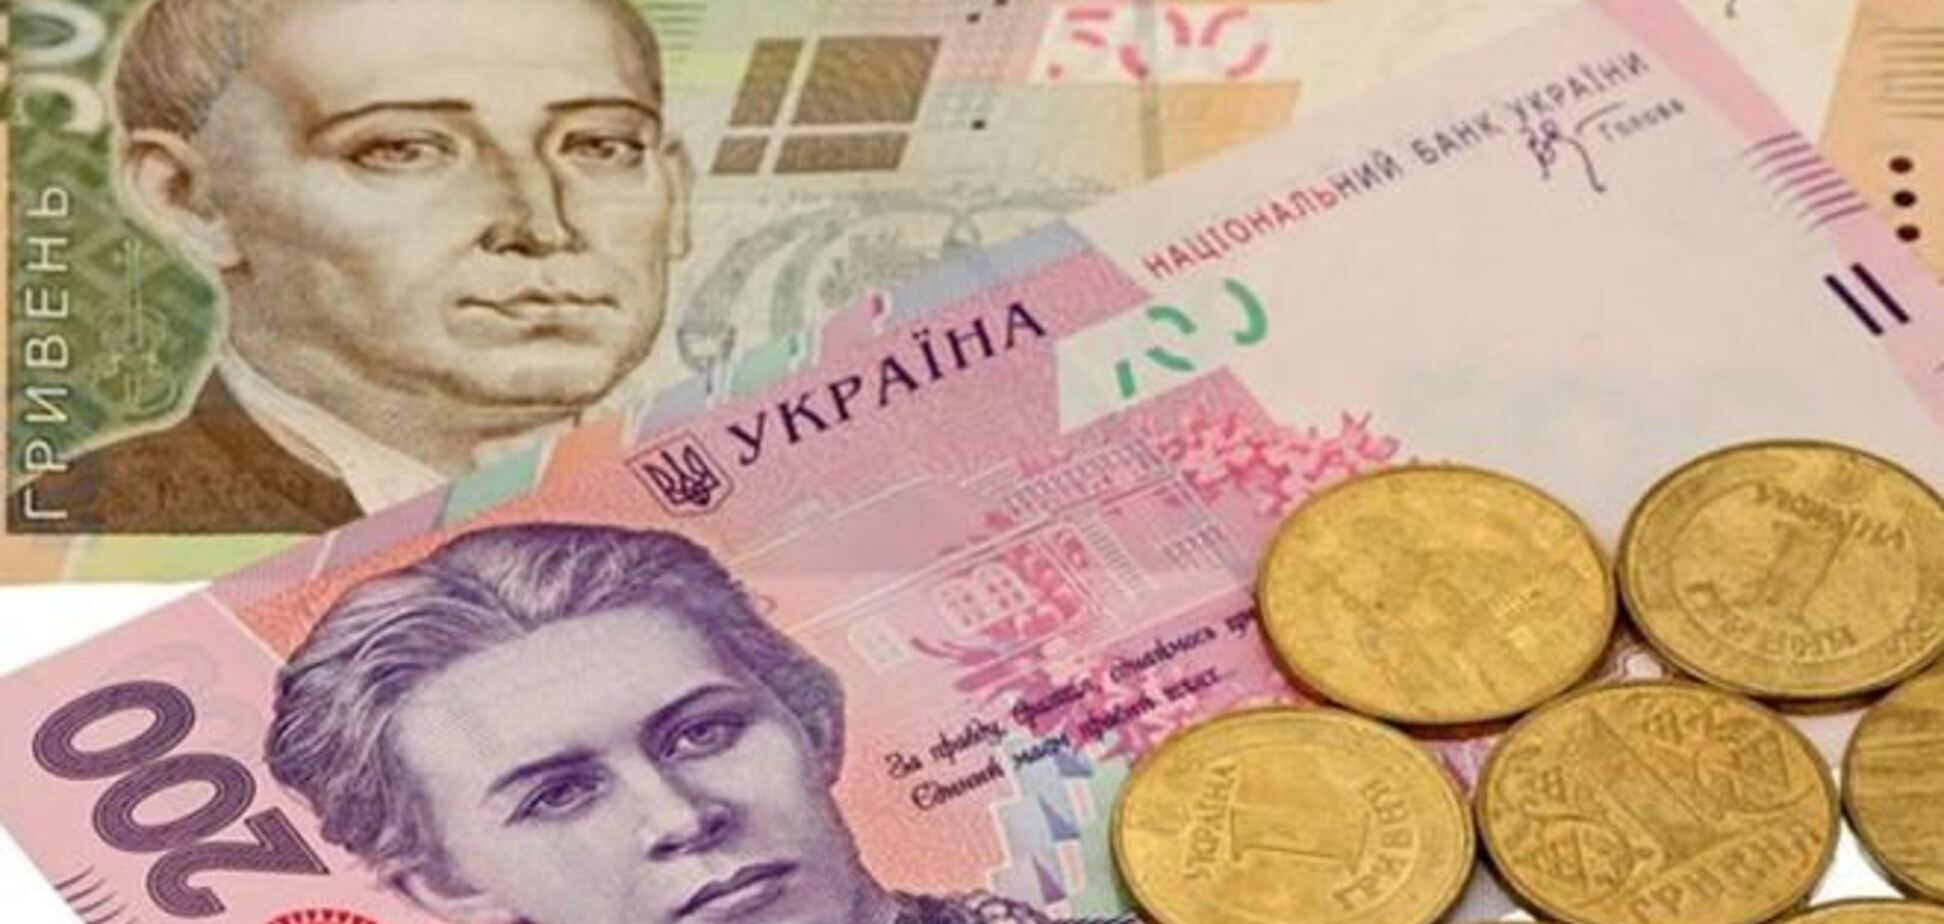 Средняя зарплата украинцев выросла на 22 гривни - Госстат